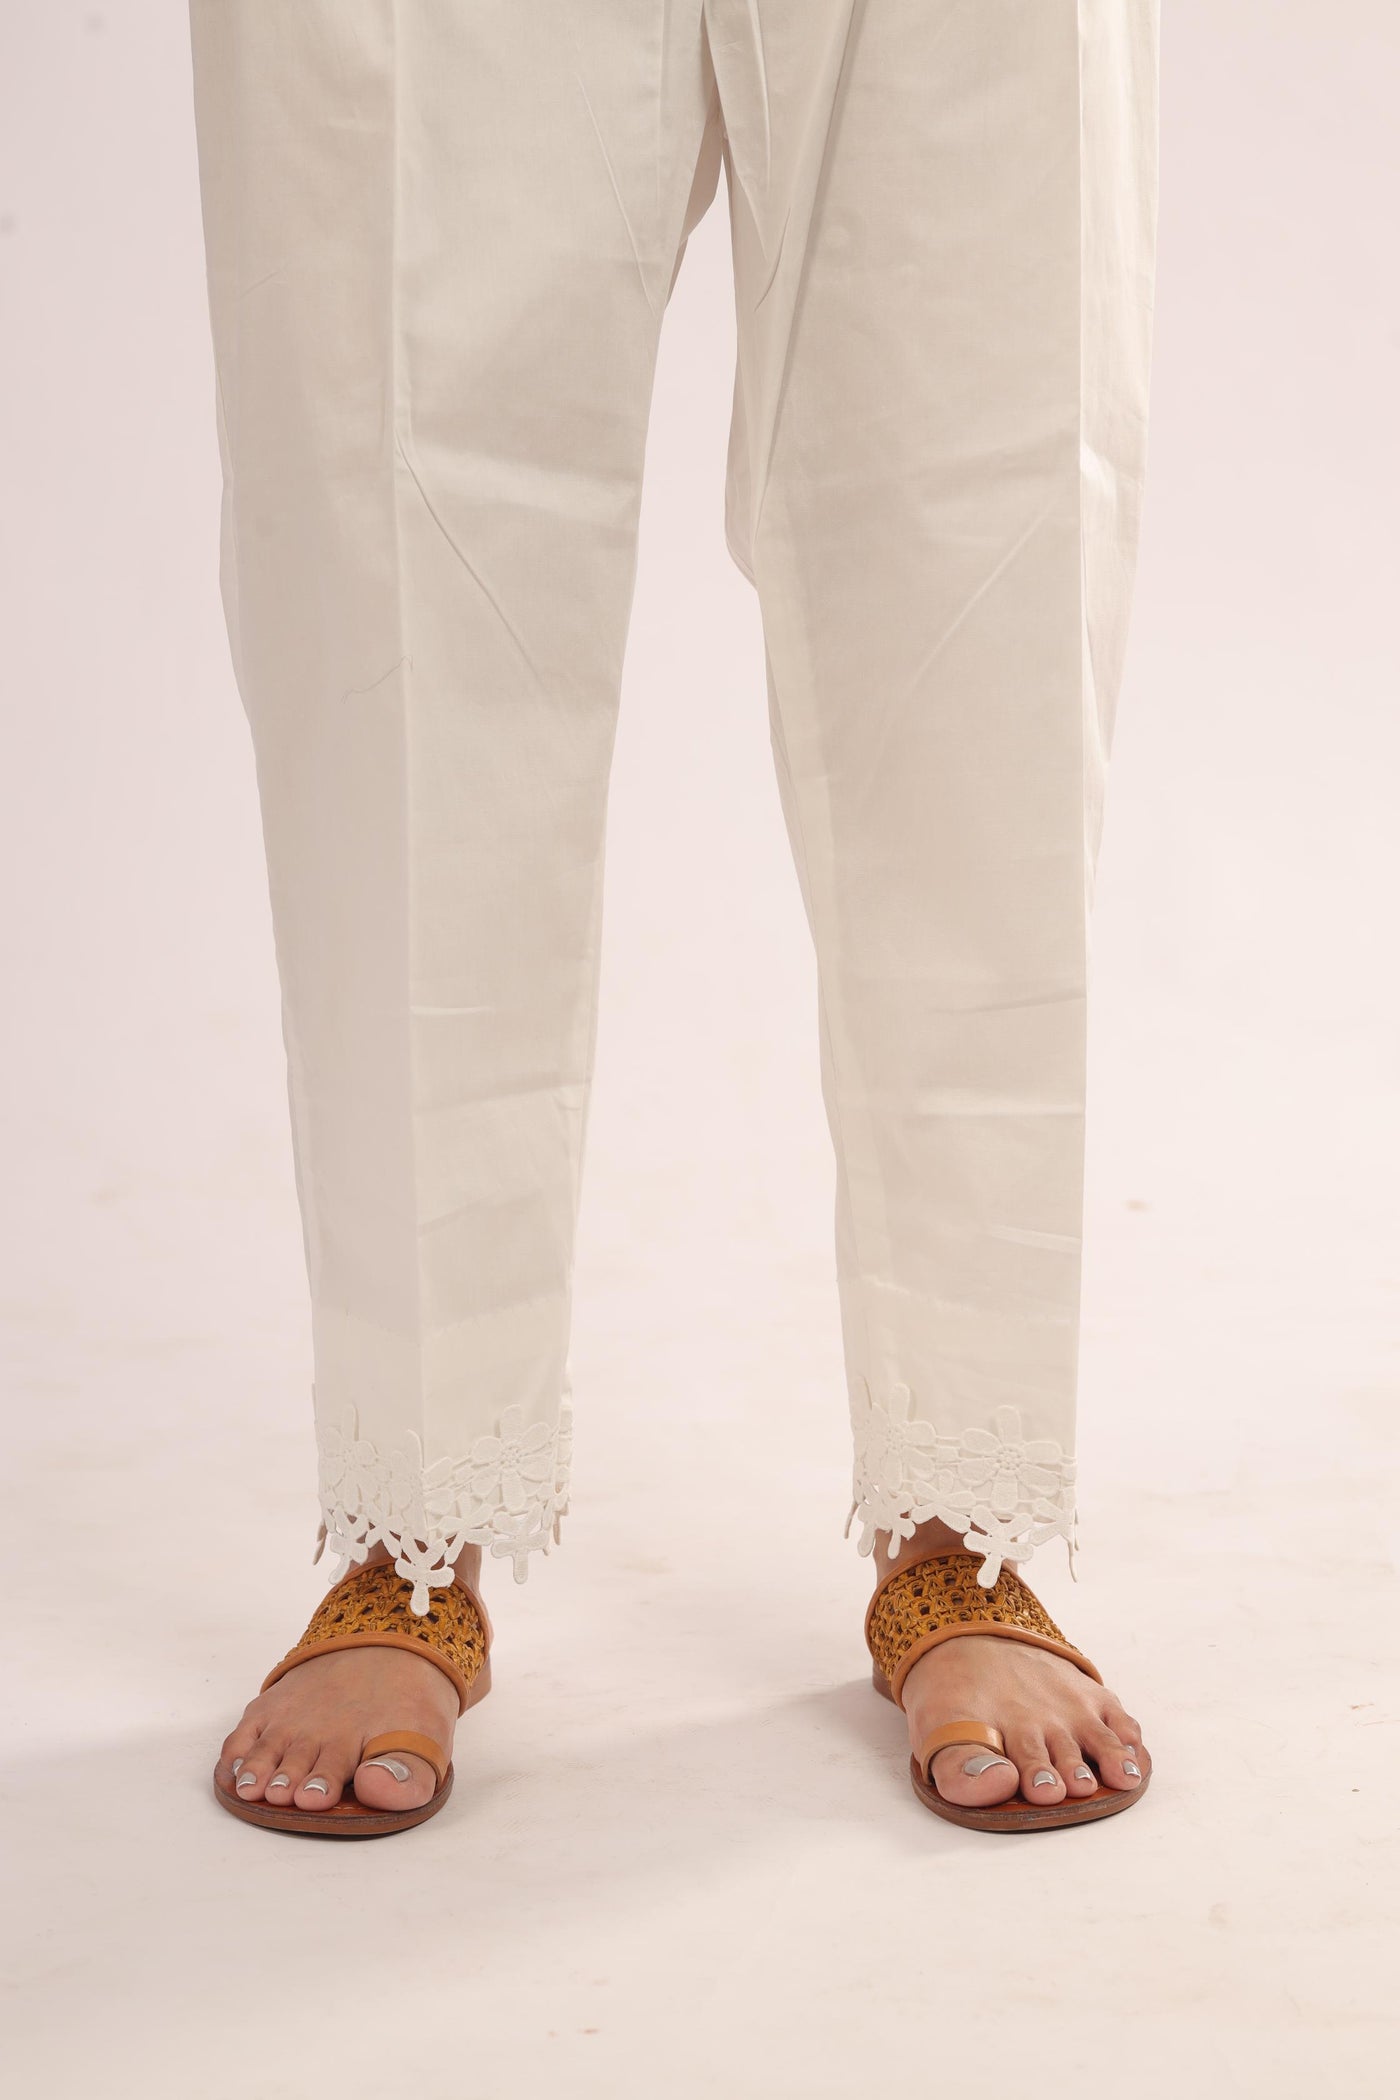 Cotton Off White Trouser - Stonez